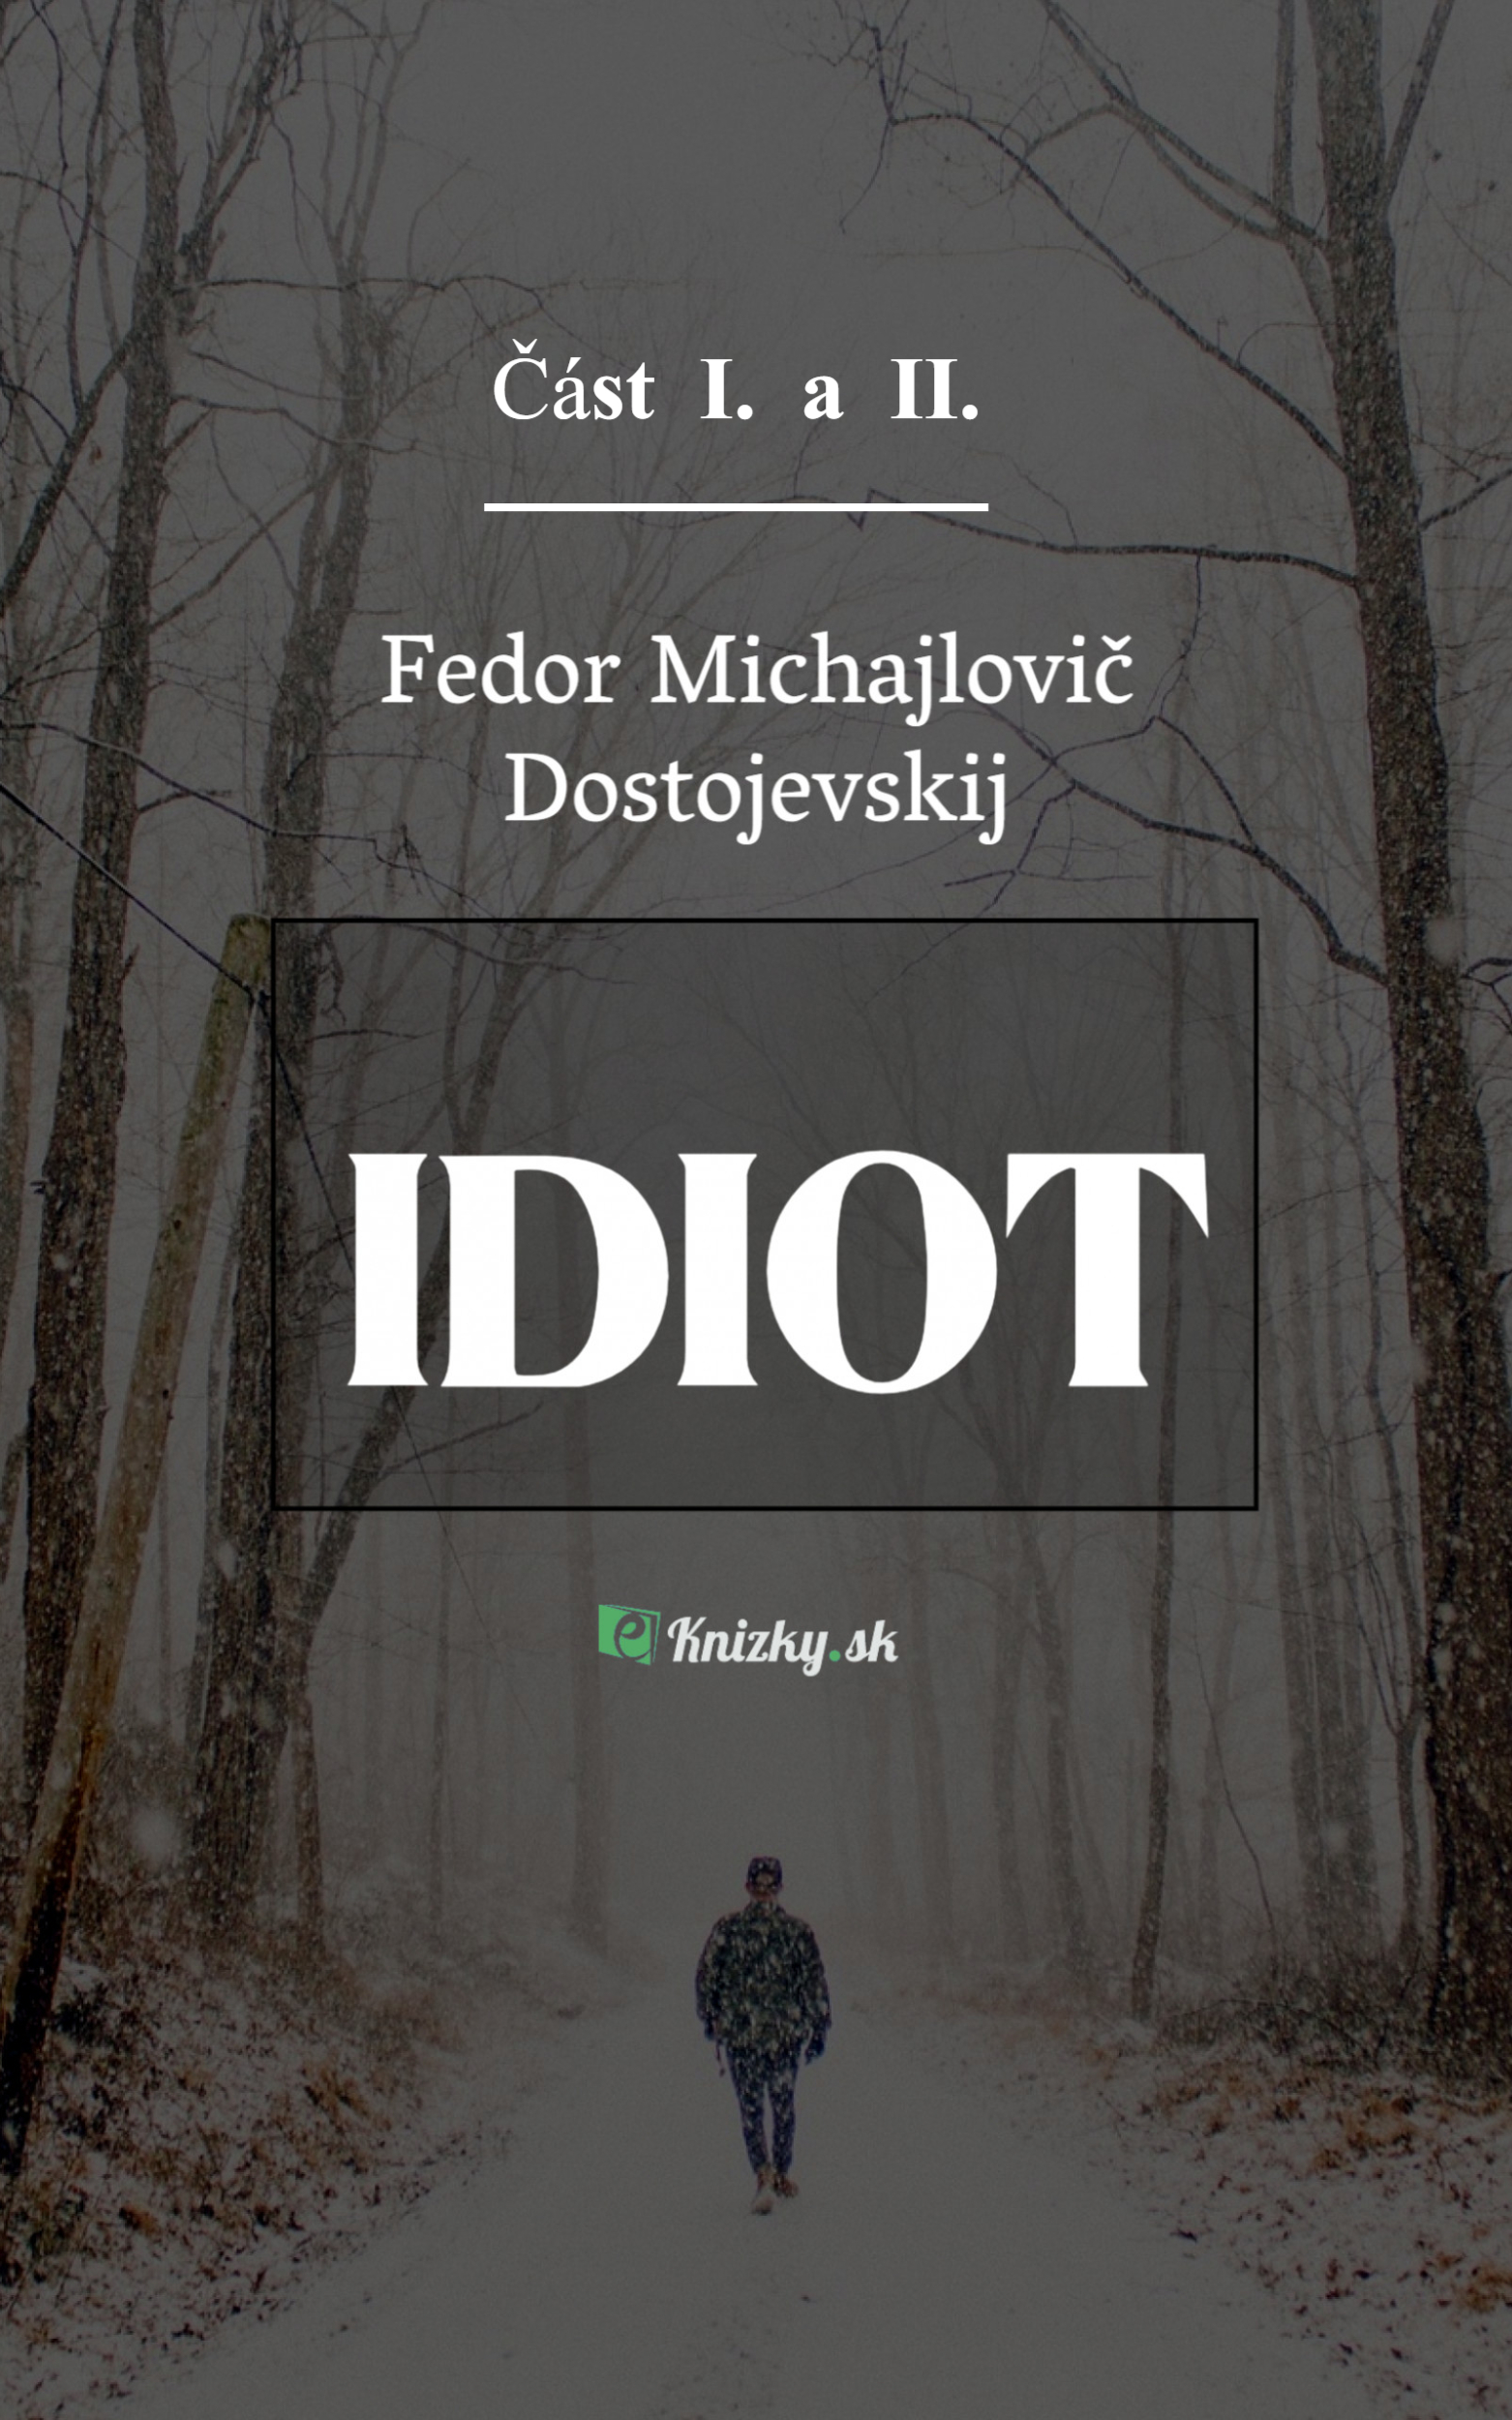 Dostojevskij Fedor Michajlovic idiot 1 2 Cast